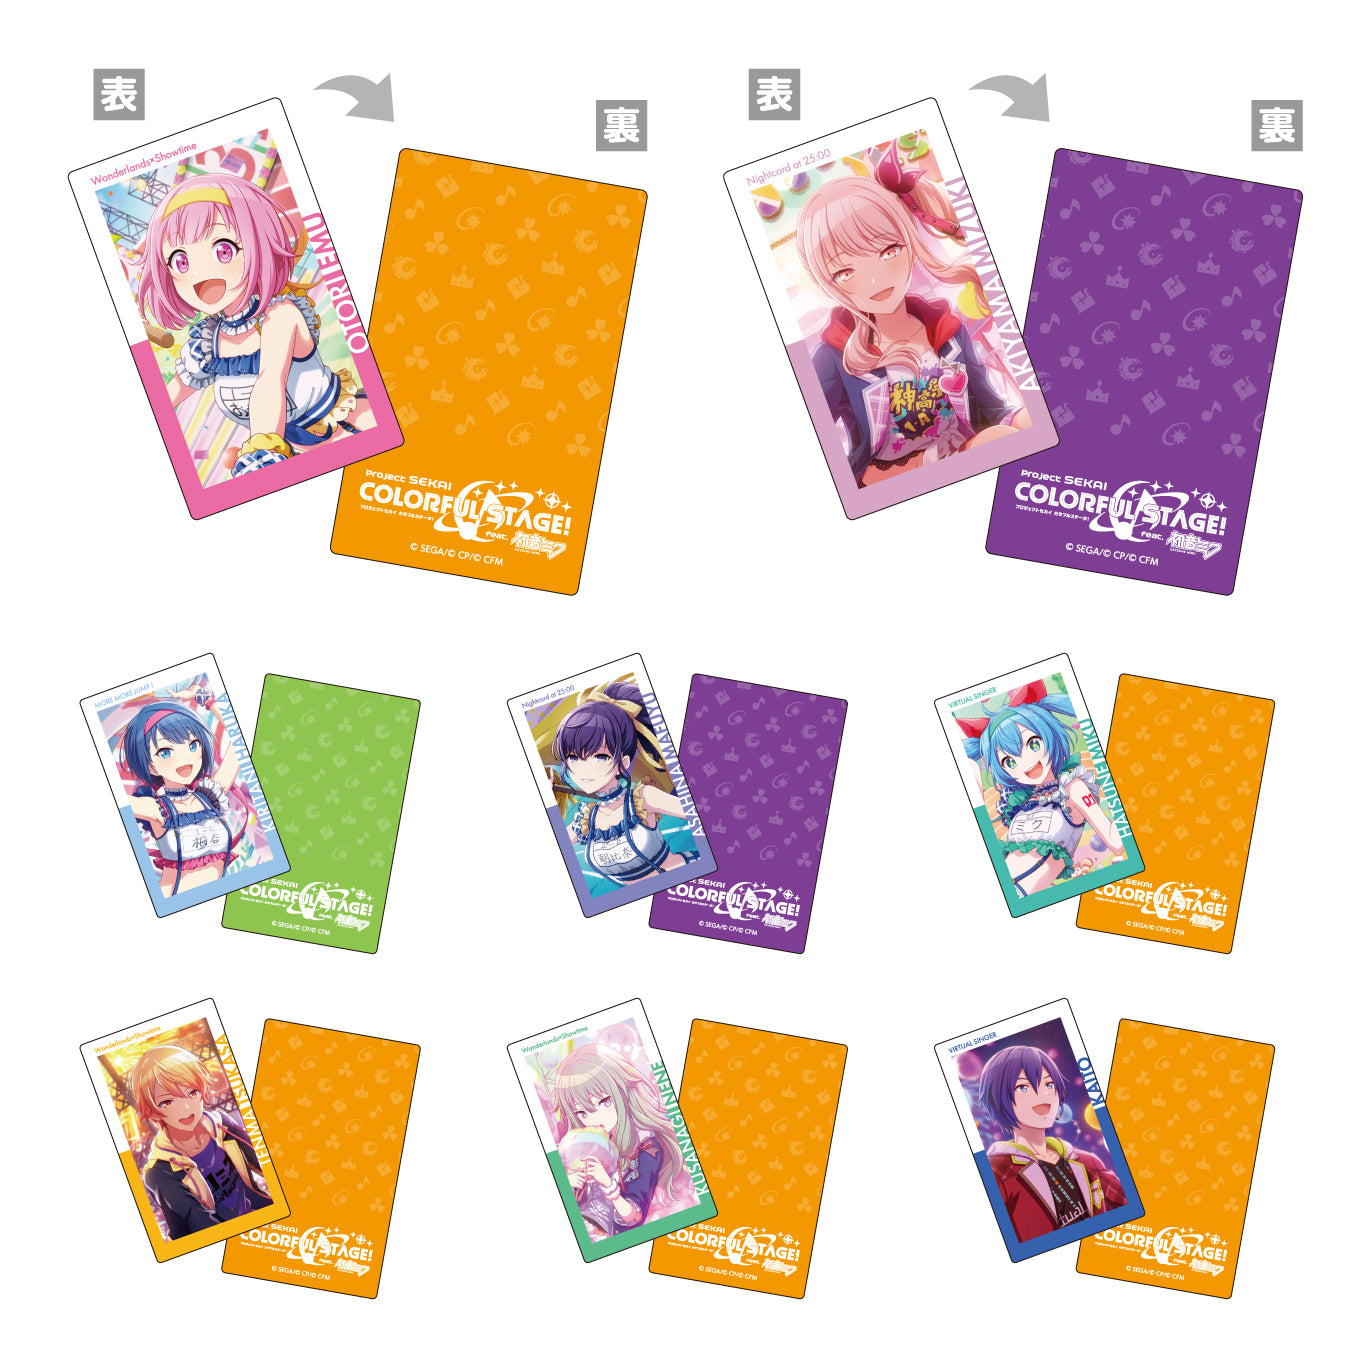 【予約商品】ePick card series vol.2 A BOX 特典付き［青柳 冬弥］